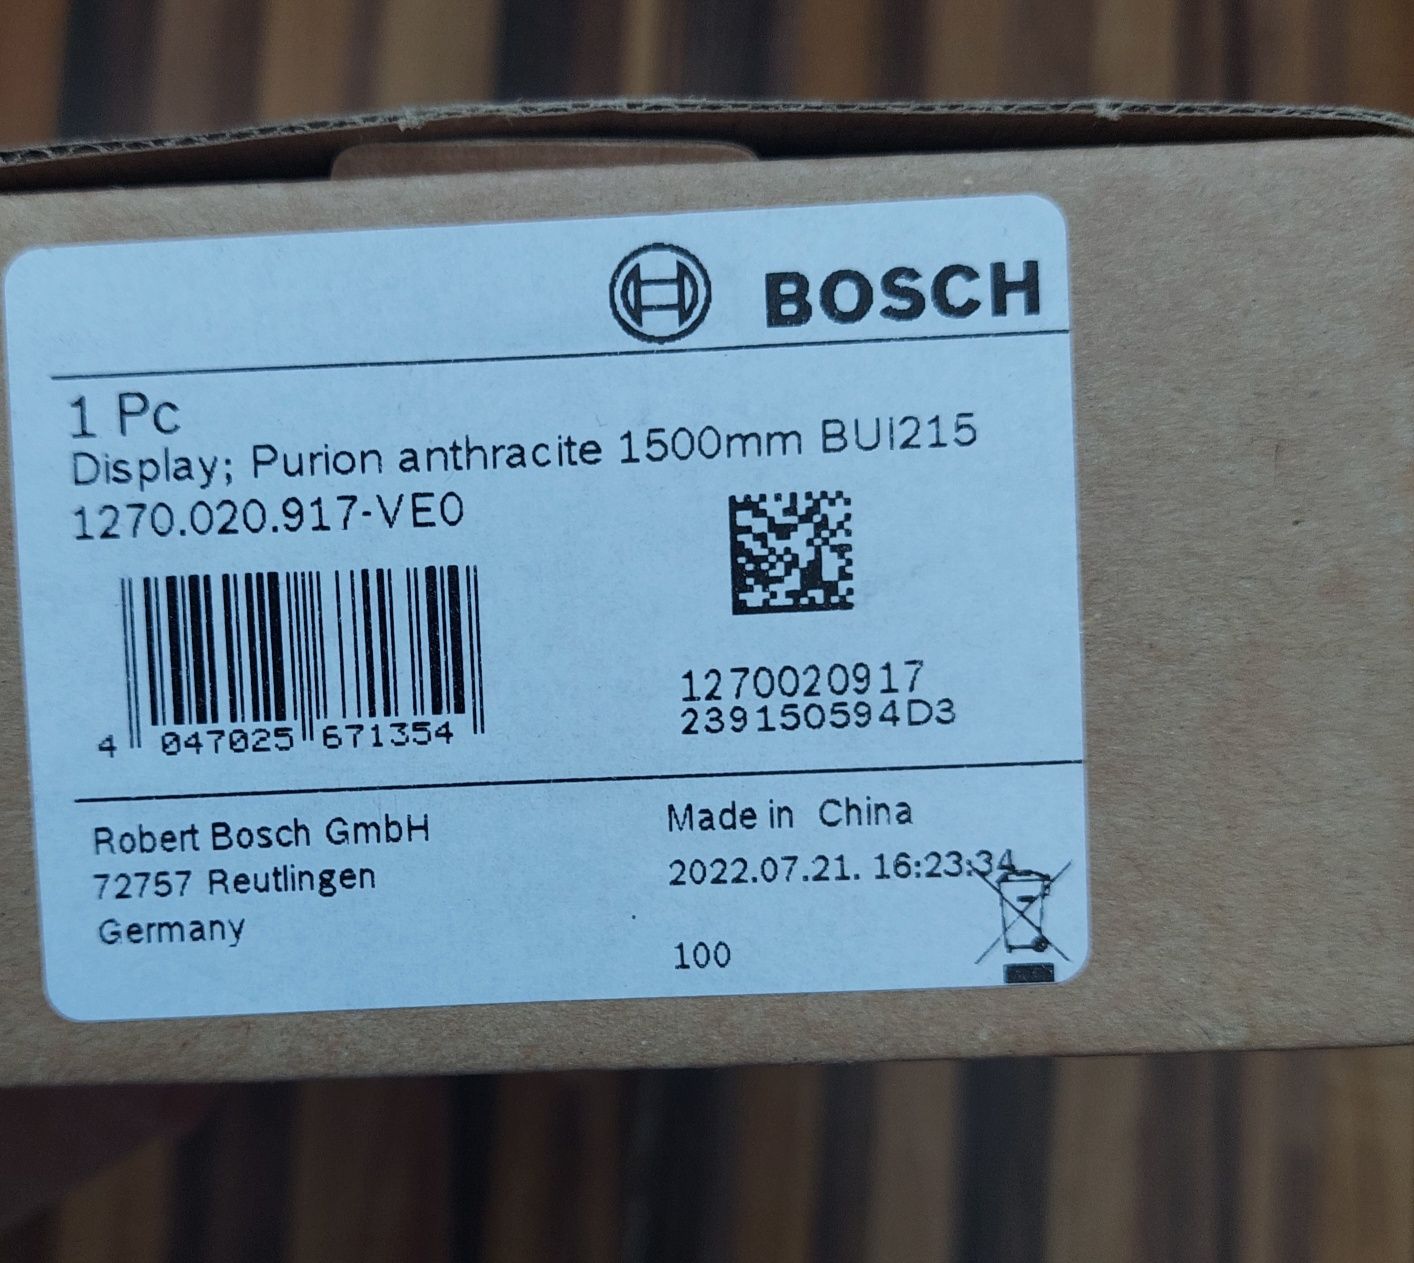 Wyświetlacz display Bosch purion.